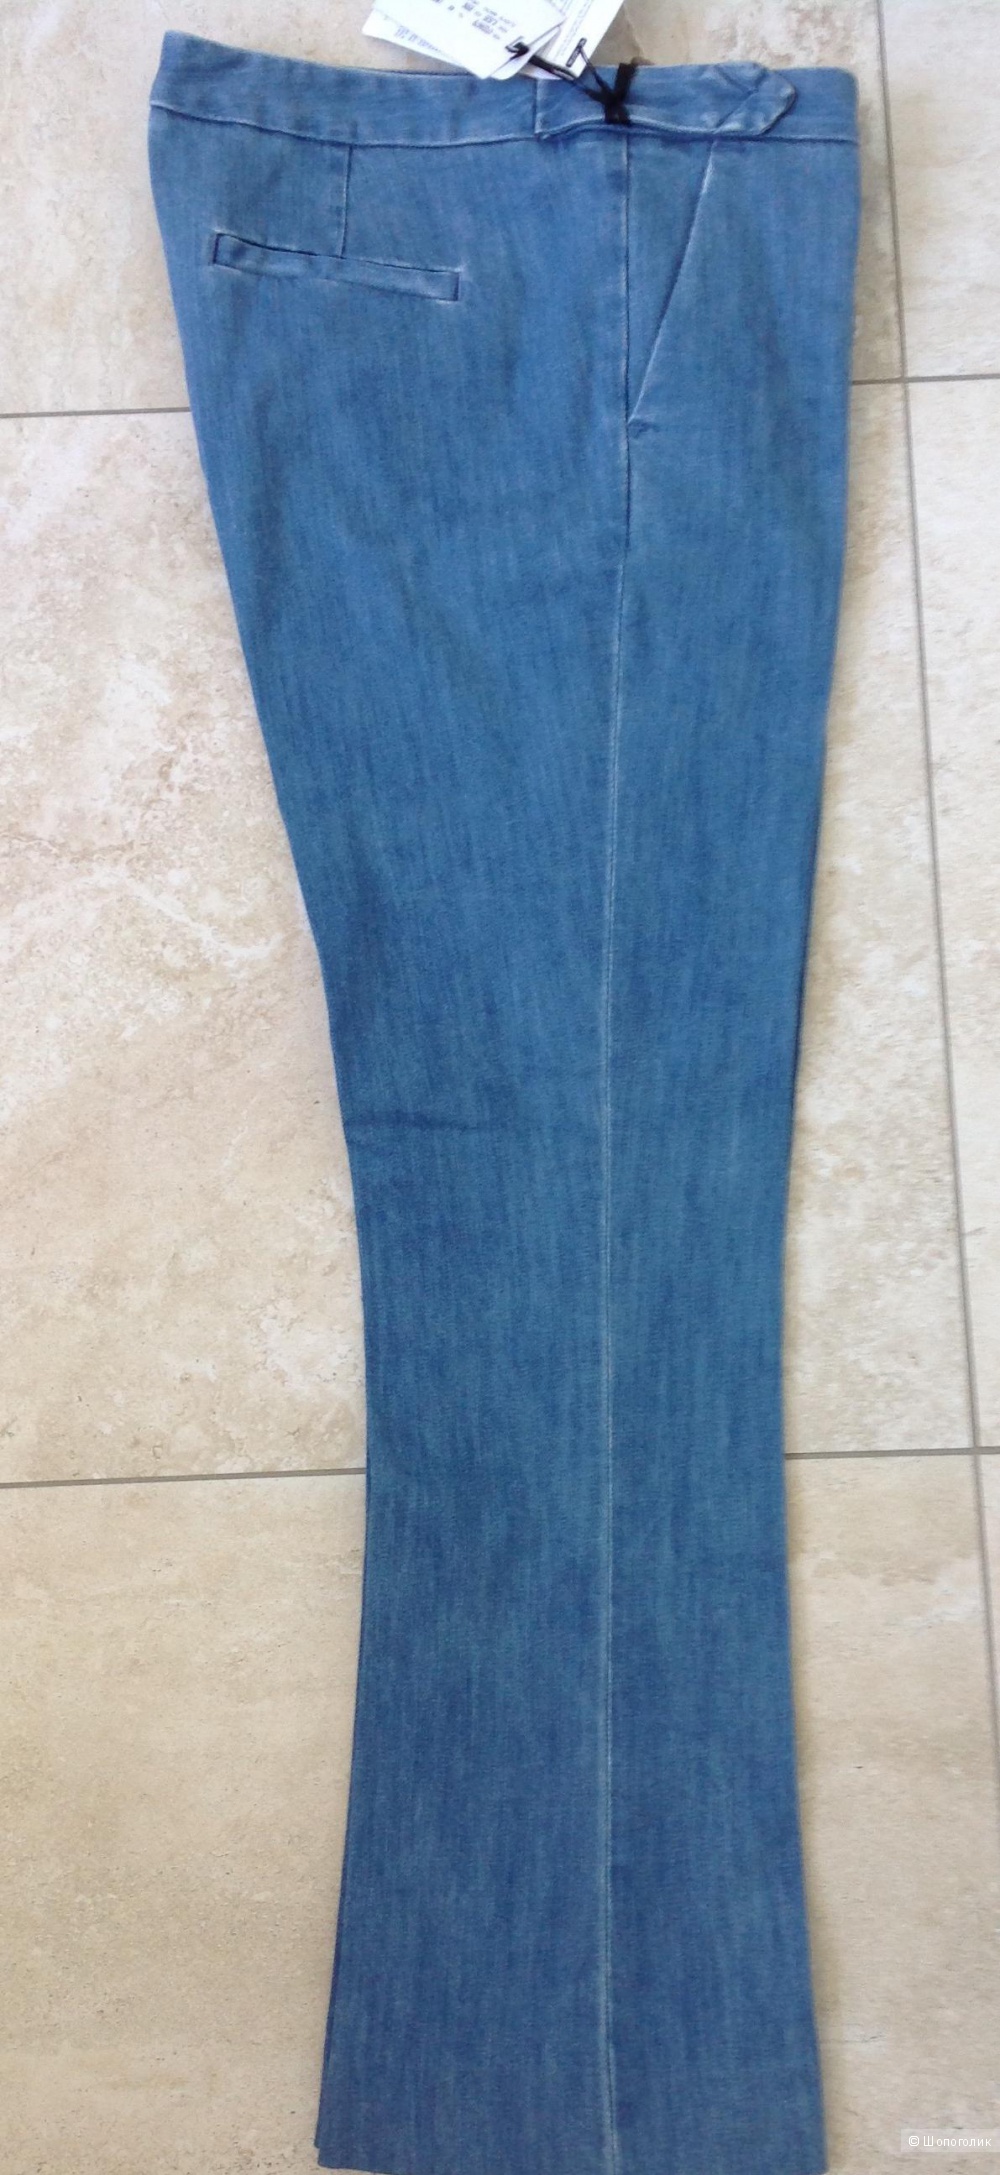 Итальянские джинсы (брюки) Mauro Grifoni